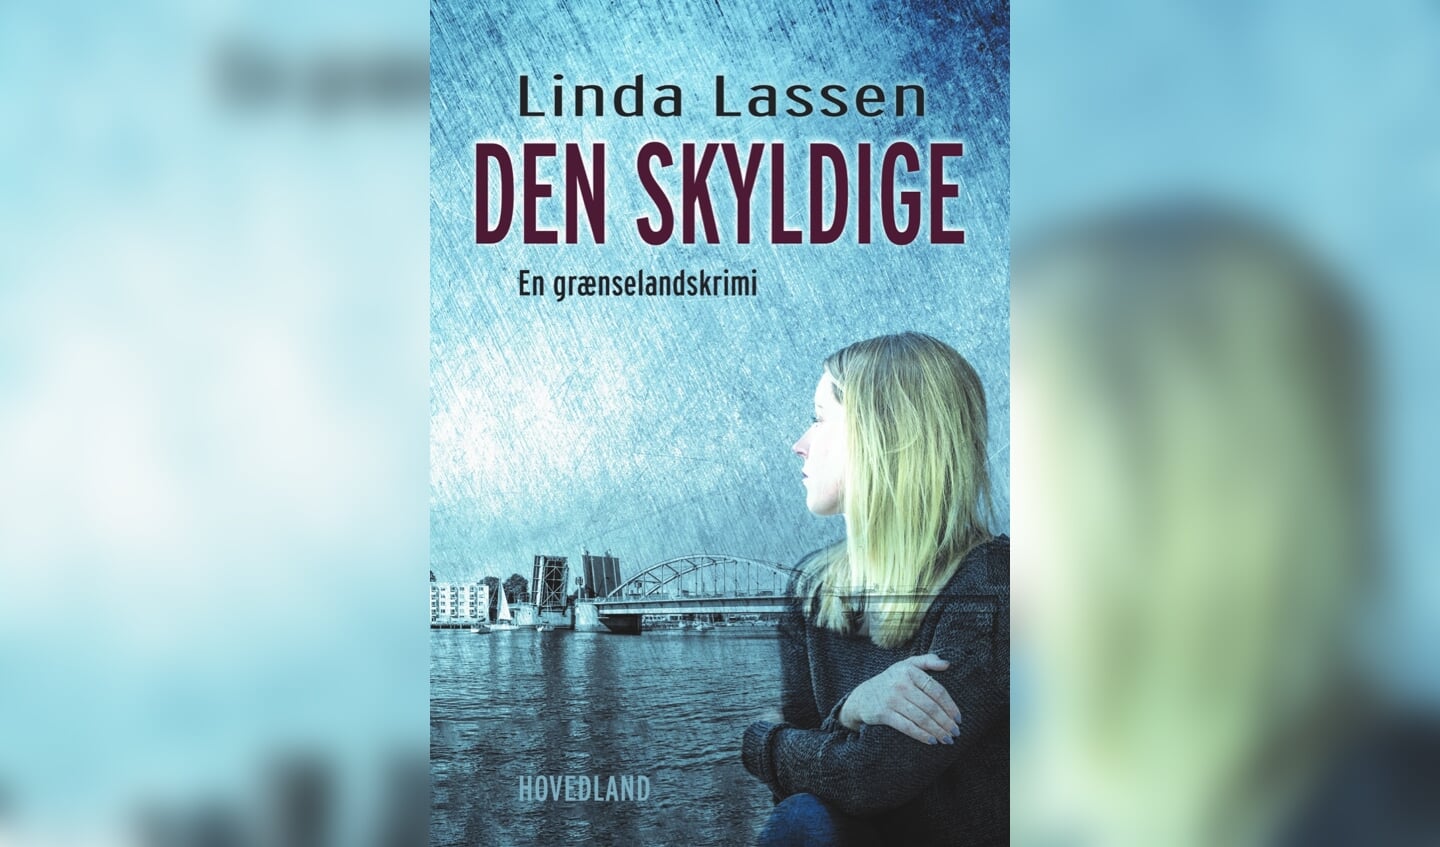 »Den skyldige« foregår i Sønderborg. I bogen leverer forfatteren en fiktiv fortælling baseret på to forbrydelser, der virkelig har fundet sted i byen.